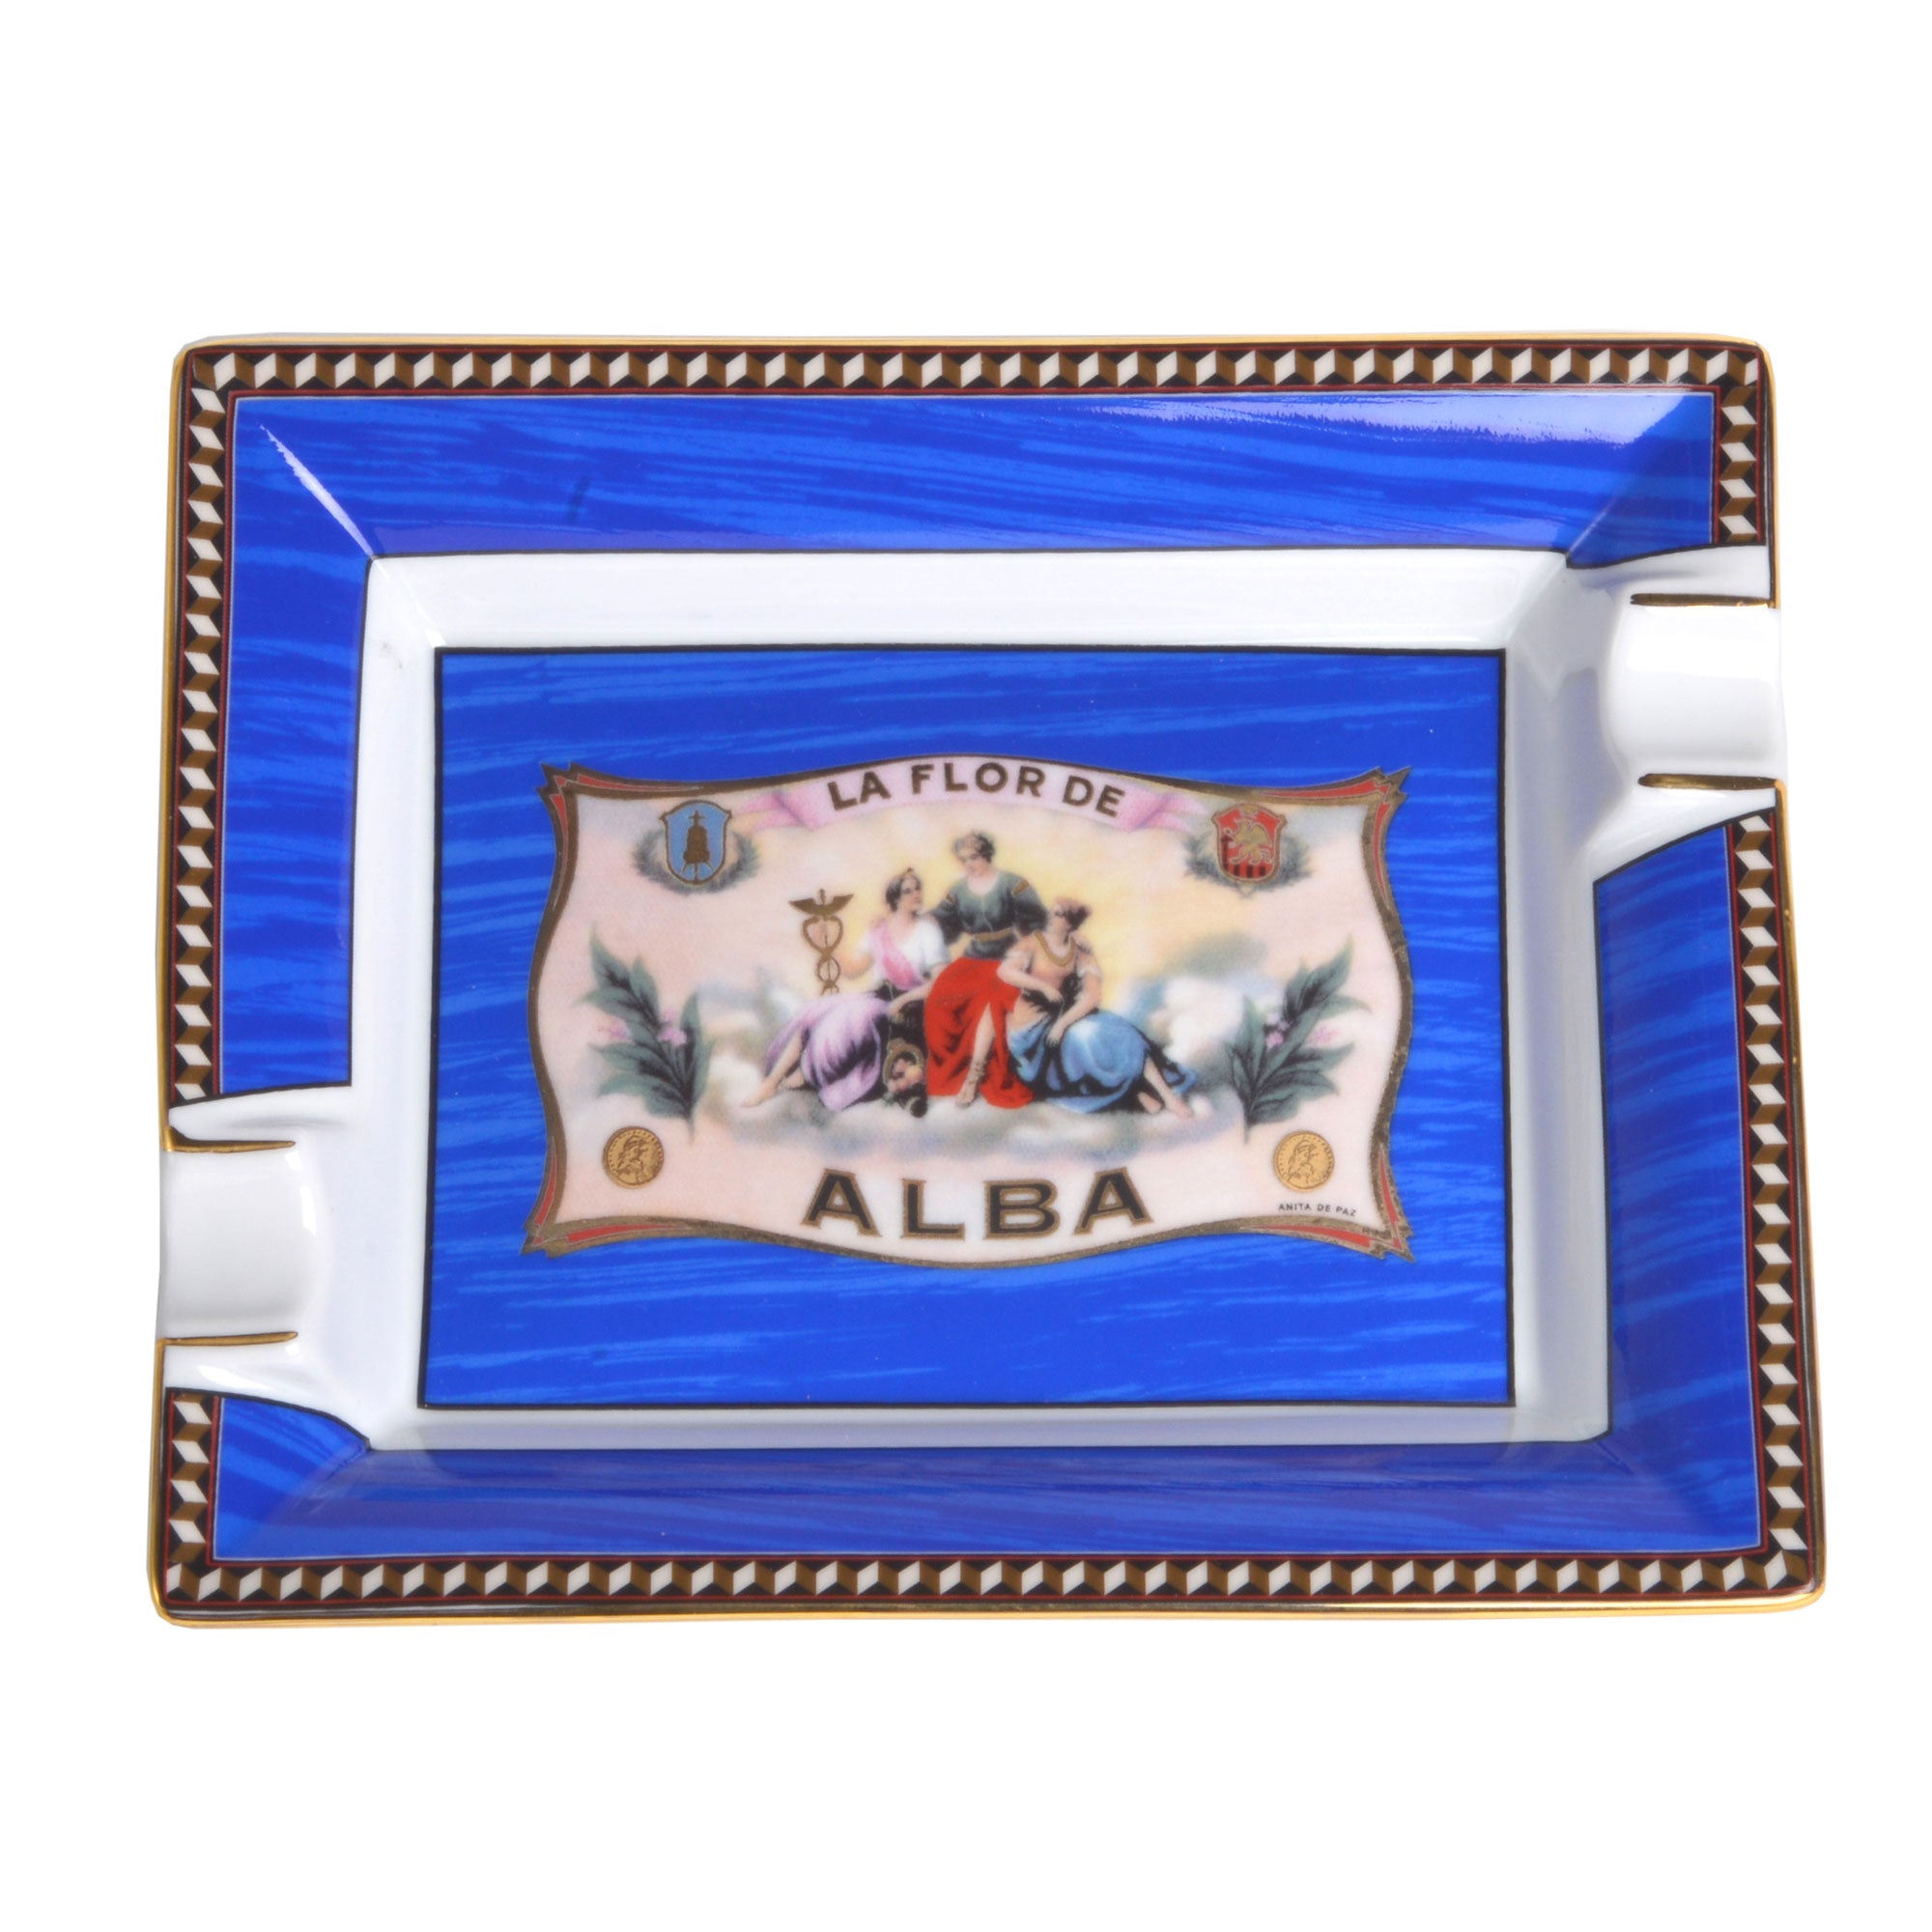 "Flor de Alba" - Cendrier en Porcelaine - Elie Bleu